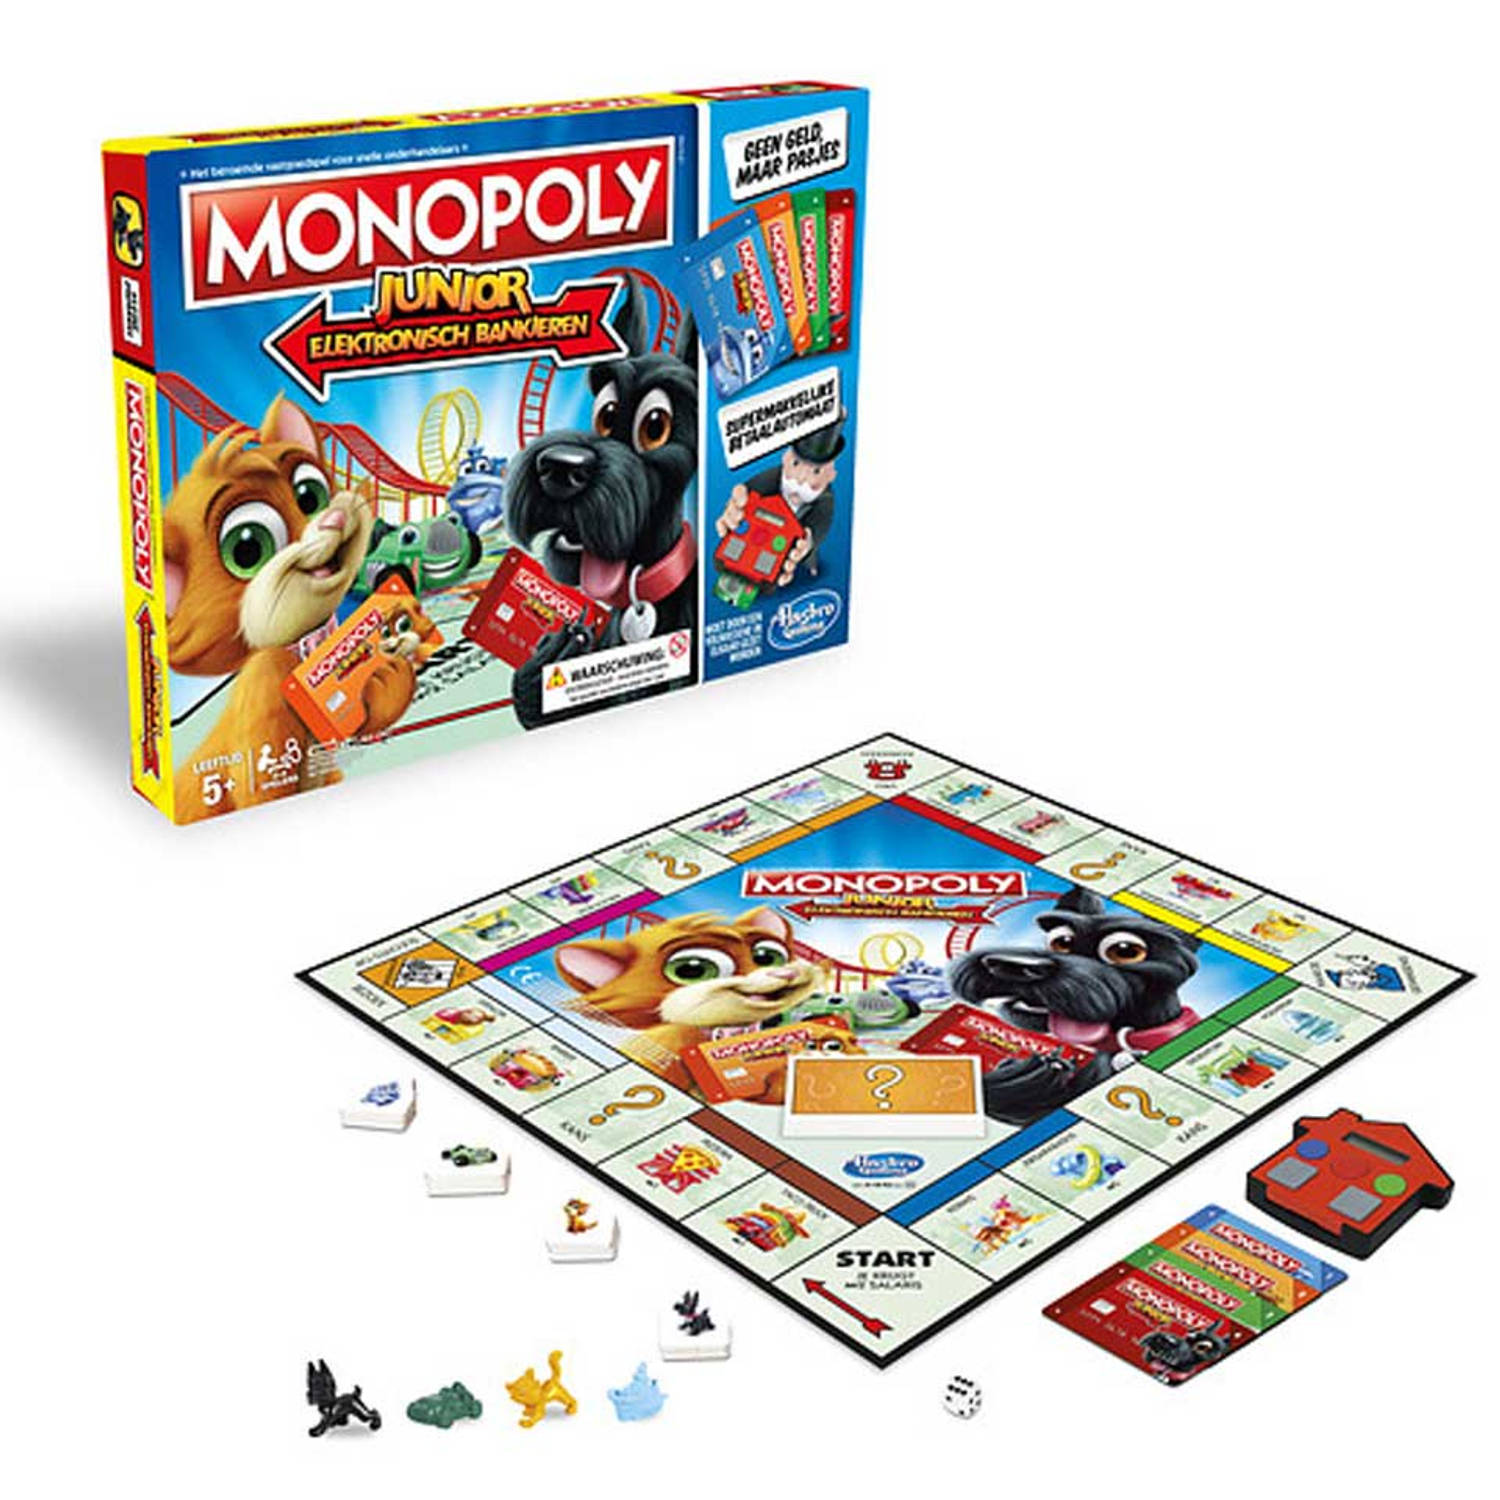 Coöperatie stad Specifiek Monopoly Junior elektronisch bankieren | Blokker